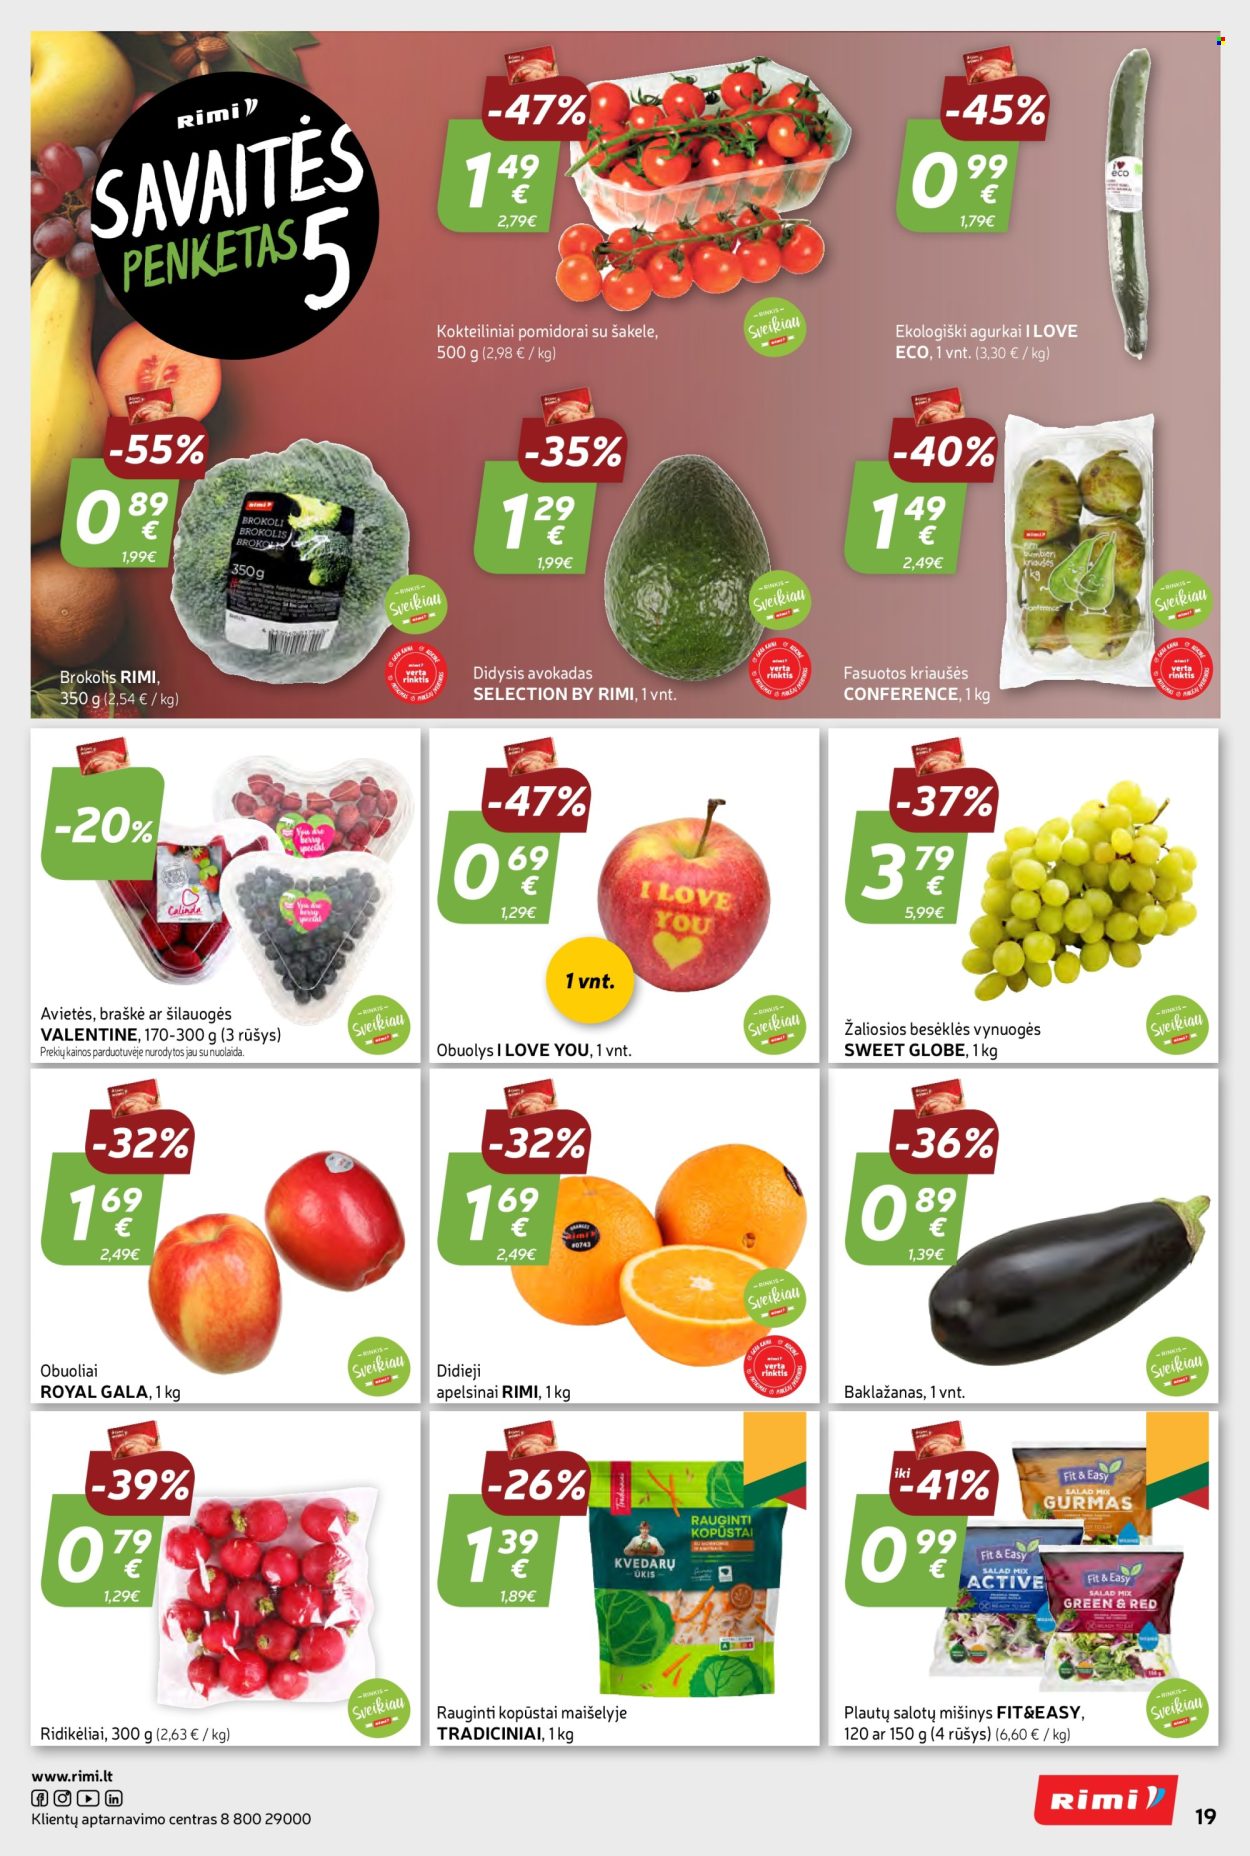 thumbnail - „Rimi“ leidinys - 2024 02 13 - 2024 02 26 - Išpardavimų produktai - baklažanai, brokoliai, kopūstai, pomidorai, ridikėliai, avietės, avokadas, kriaušės, obuolys, šilauogės, vynuogės, I Love Eco. 19 puslapis.